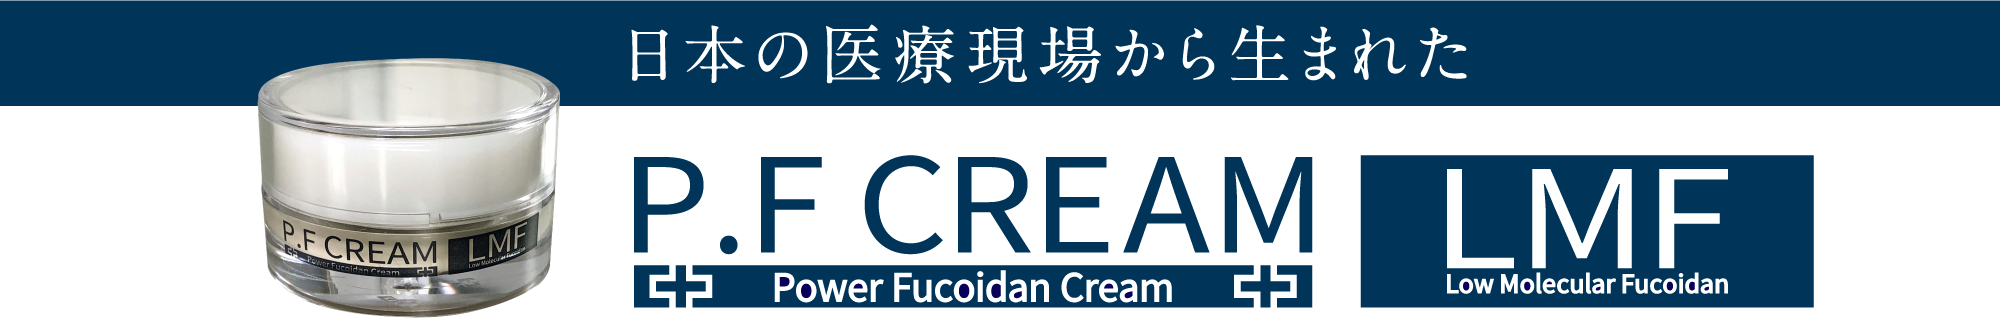 日本の医療現場から生まれた、P.F CREAM 多機能美容クリーム